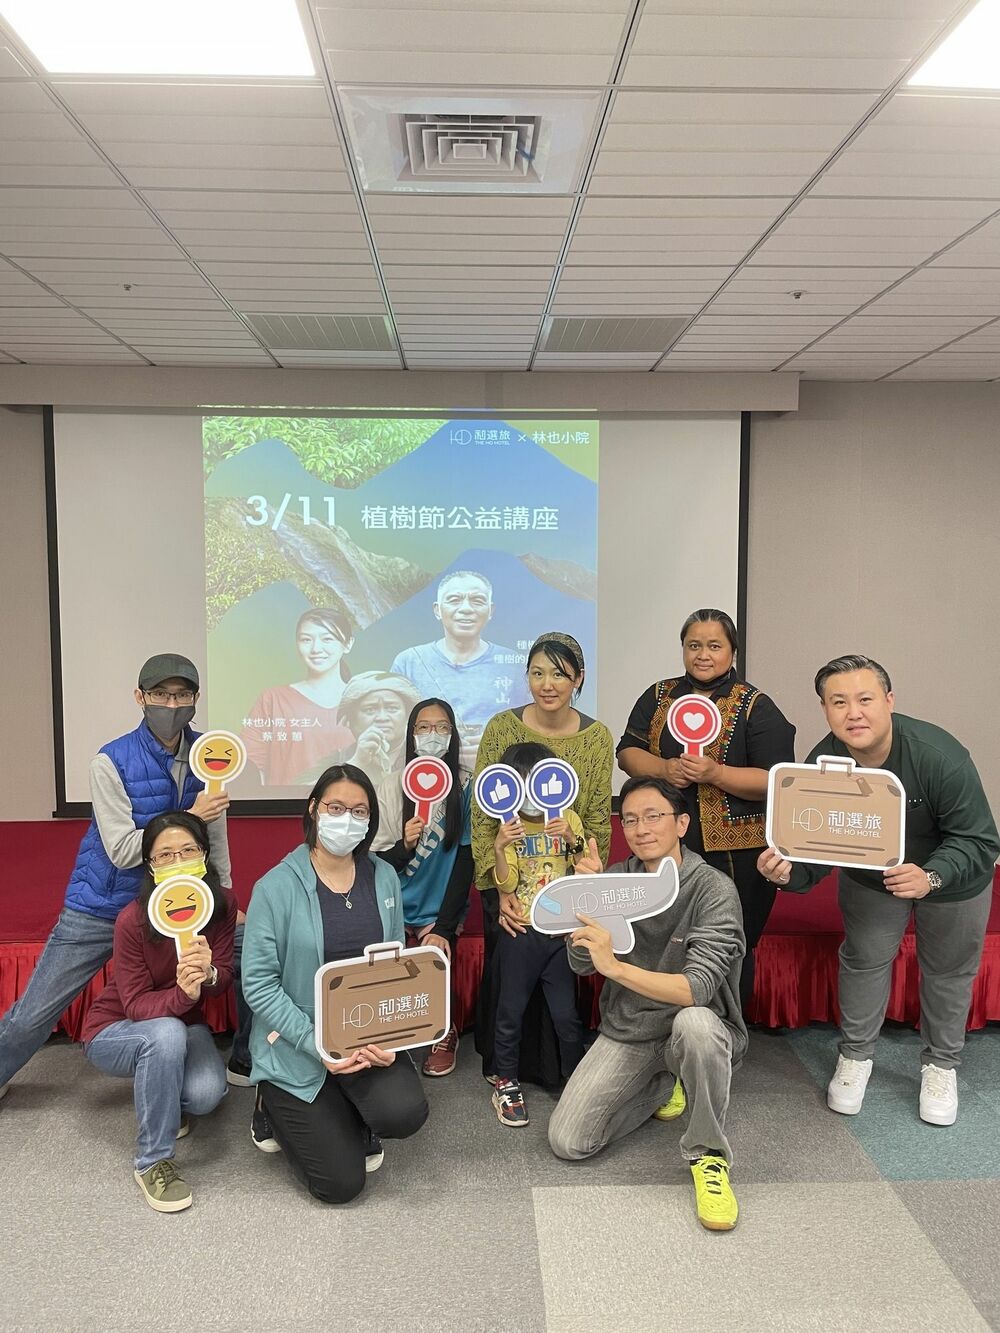 和選旅辦公益講座 與在地創生共同關心台灣森林 - 台北郵報 | The Taipei Post